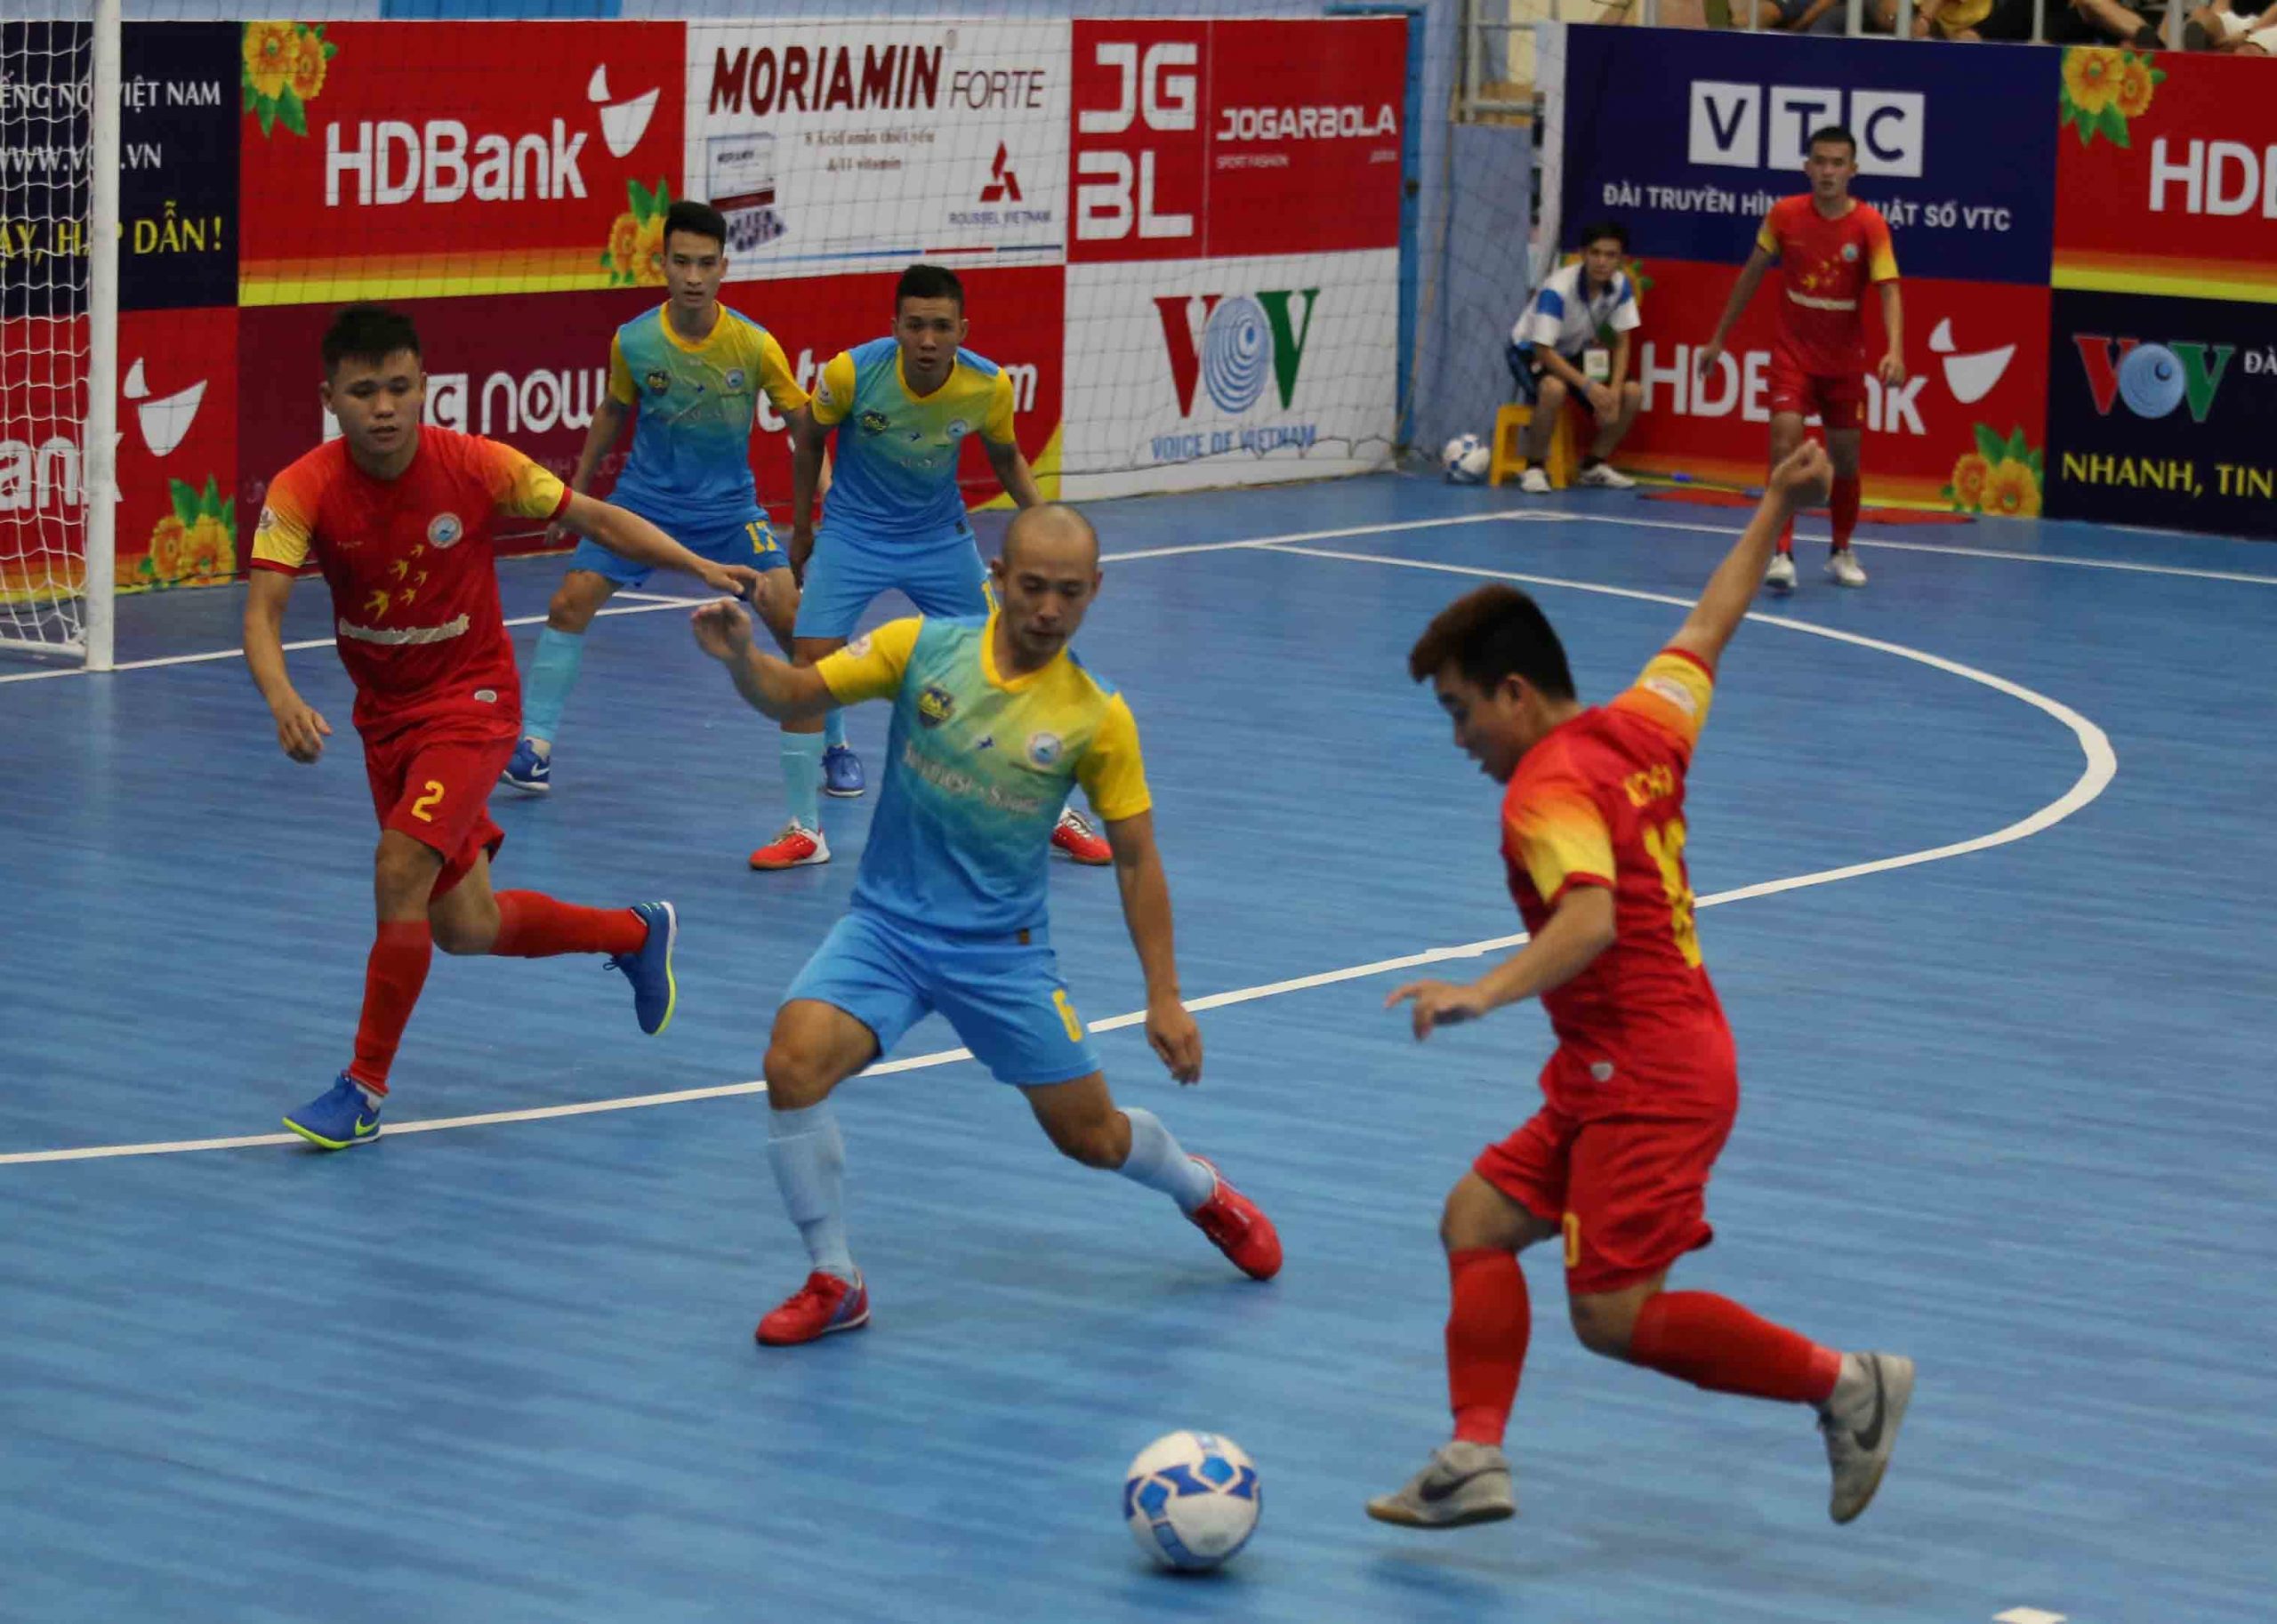 Sahako tiếp tục ở vị trí dẫn đầu cuộc thi đấu Futsal HDBank 2020 lượt 5